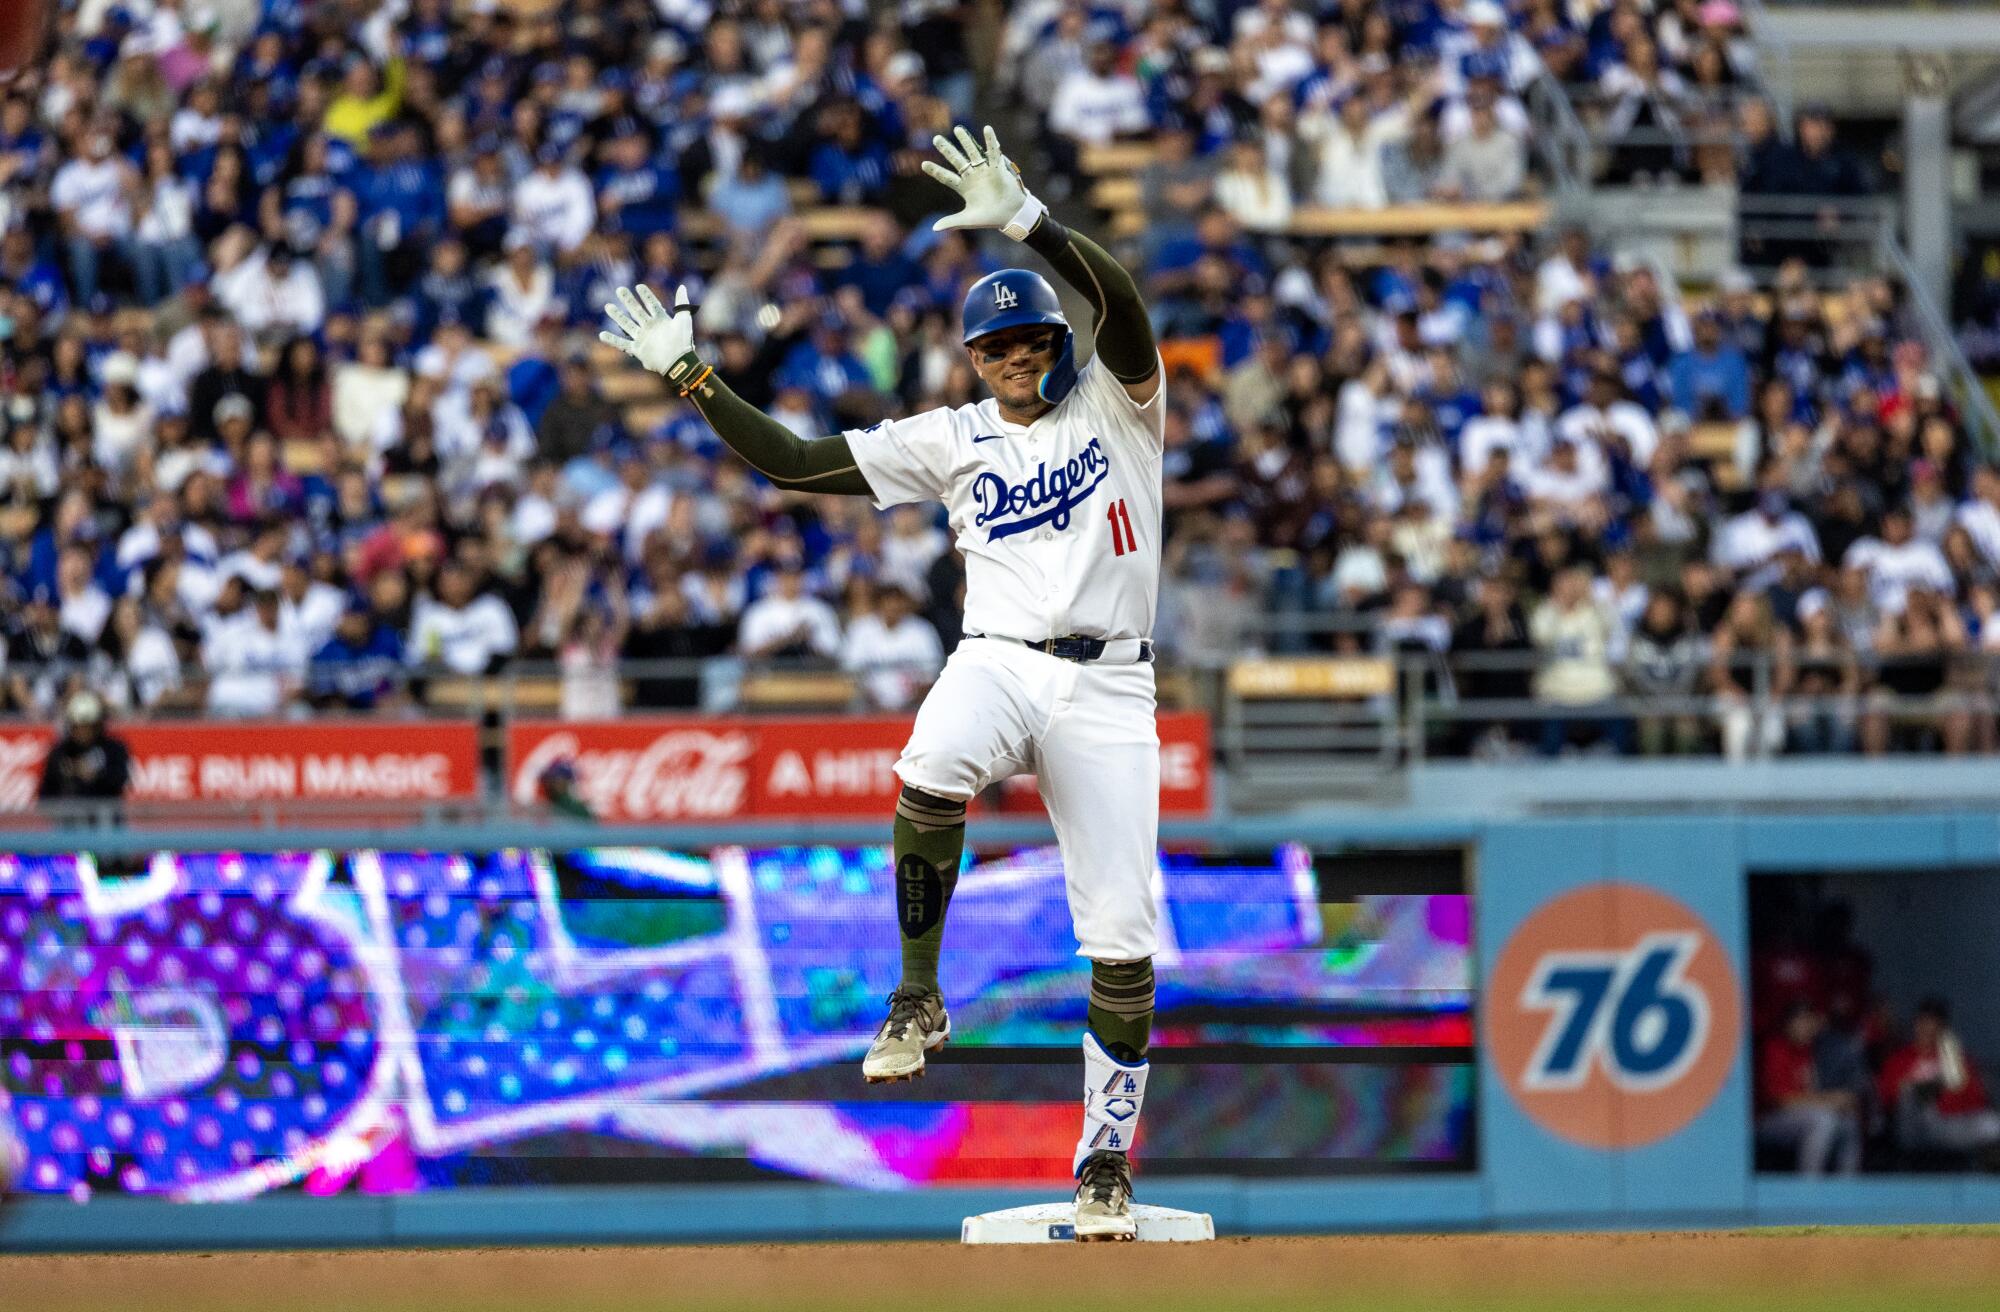 El campocorto de los Dodgers, Miguel Rojas, adopta la pose característica de los Dodgers en el plato.